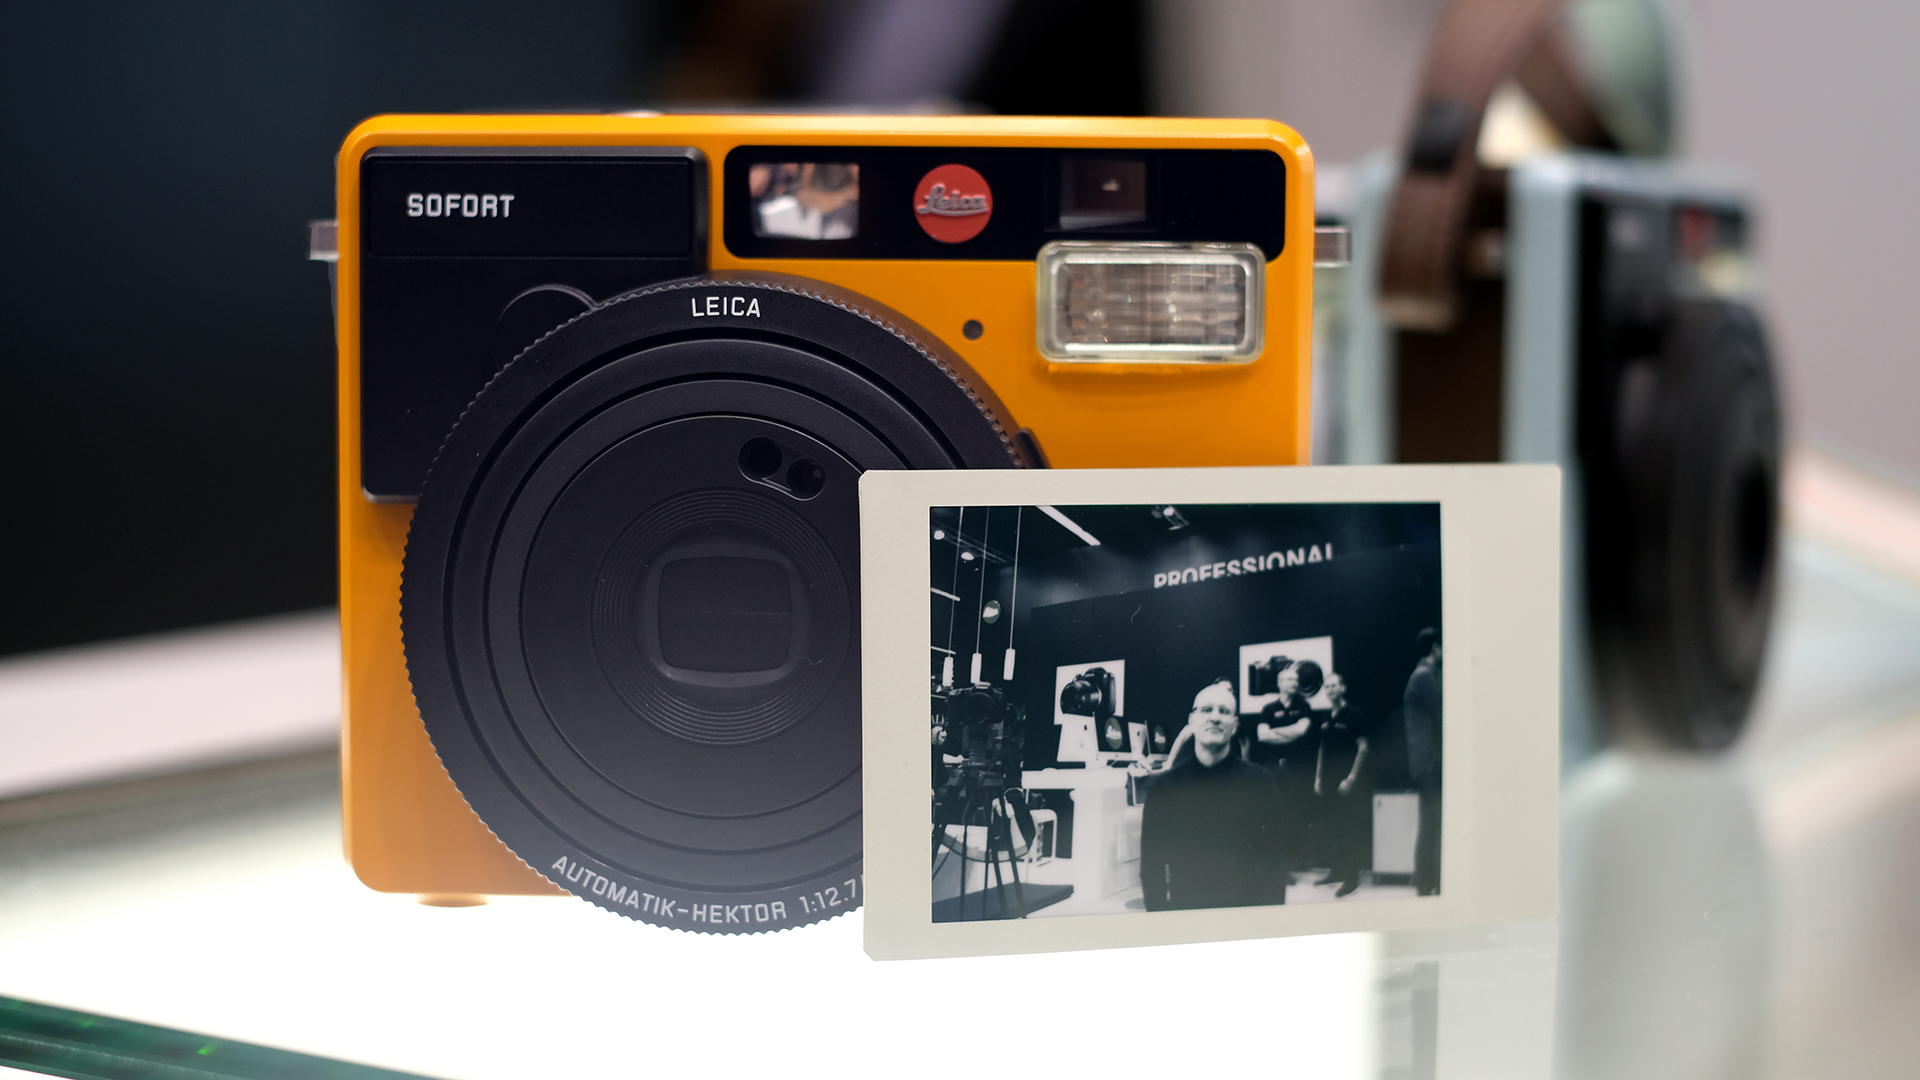 Фотоаппарат моментальной печати Leica sofort